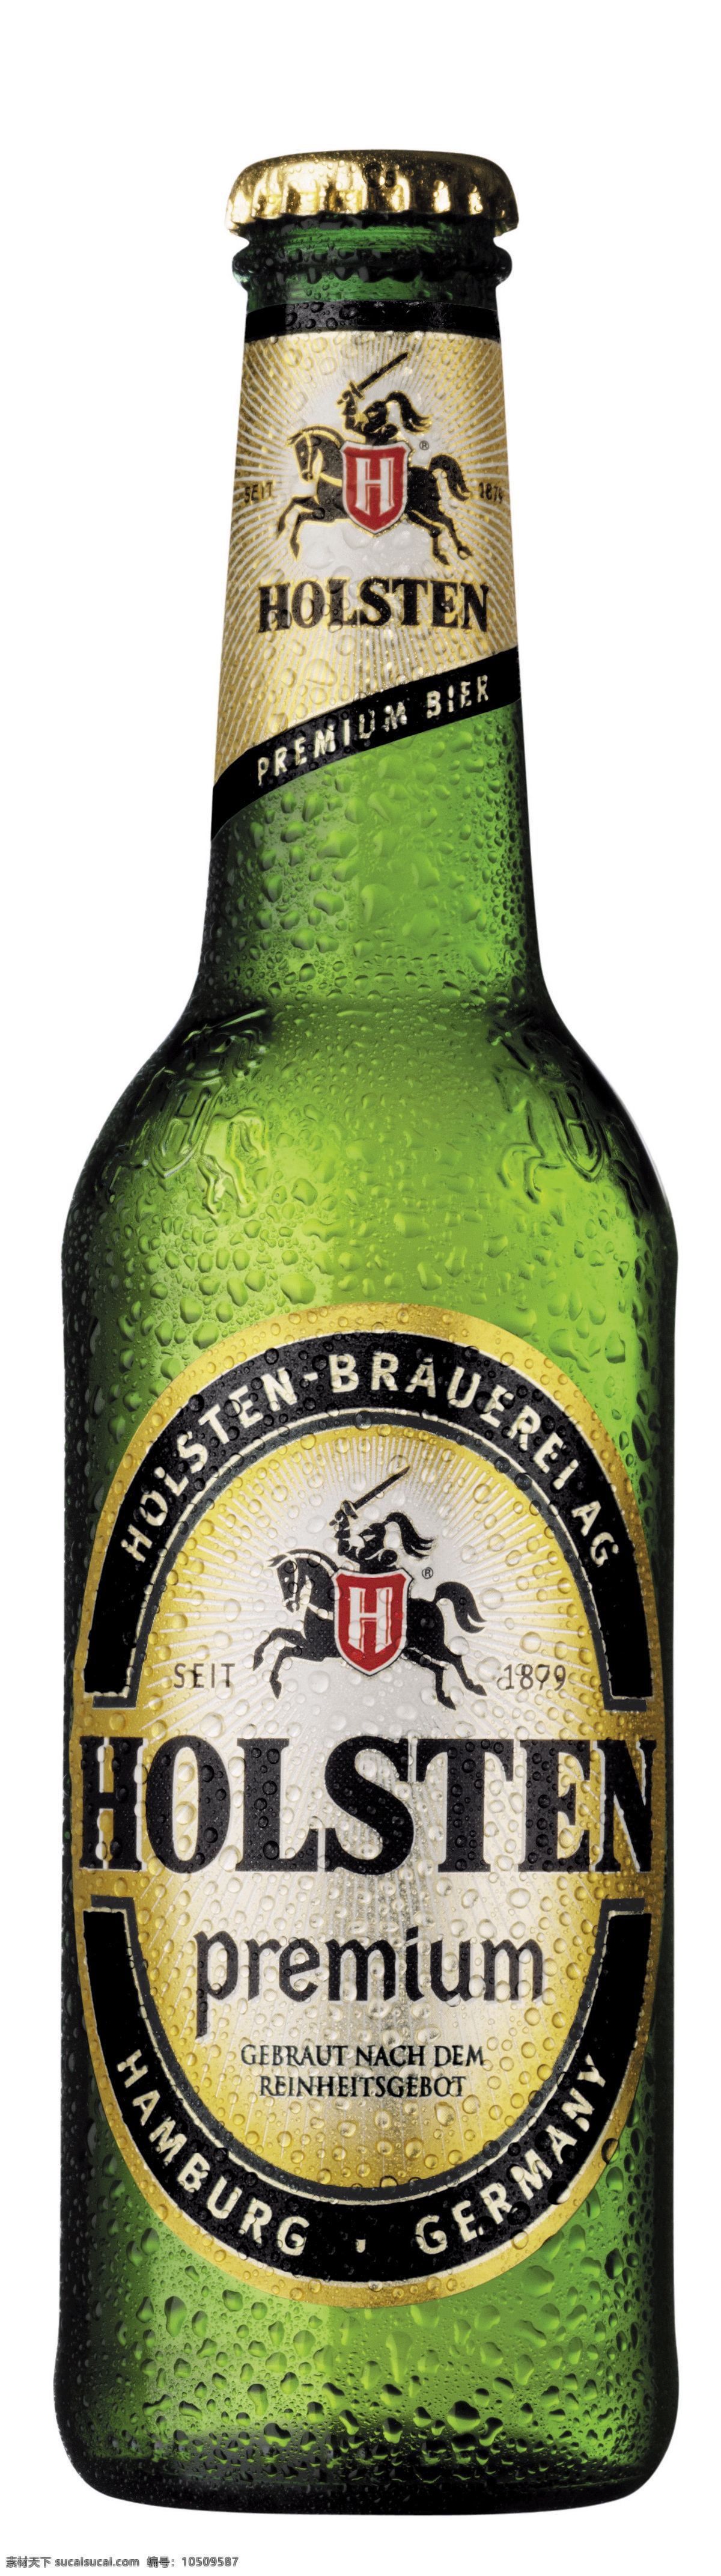 嘉士伯 holsten 啤酒 酒瓶 啤酒瓶 瓶子 啤酒标 啤酒商标 餐饮美食 饮料酒水 摄影图库